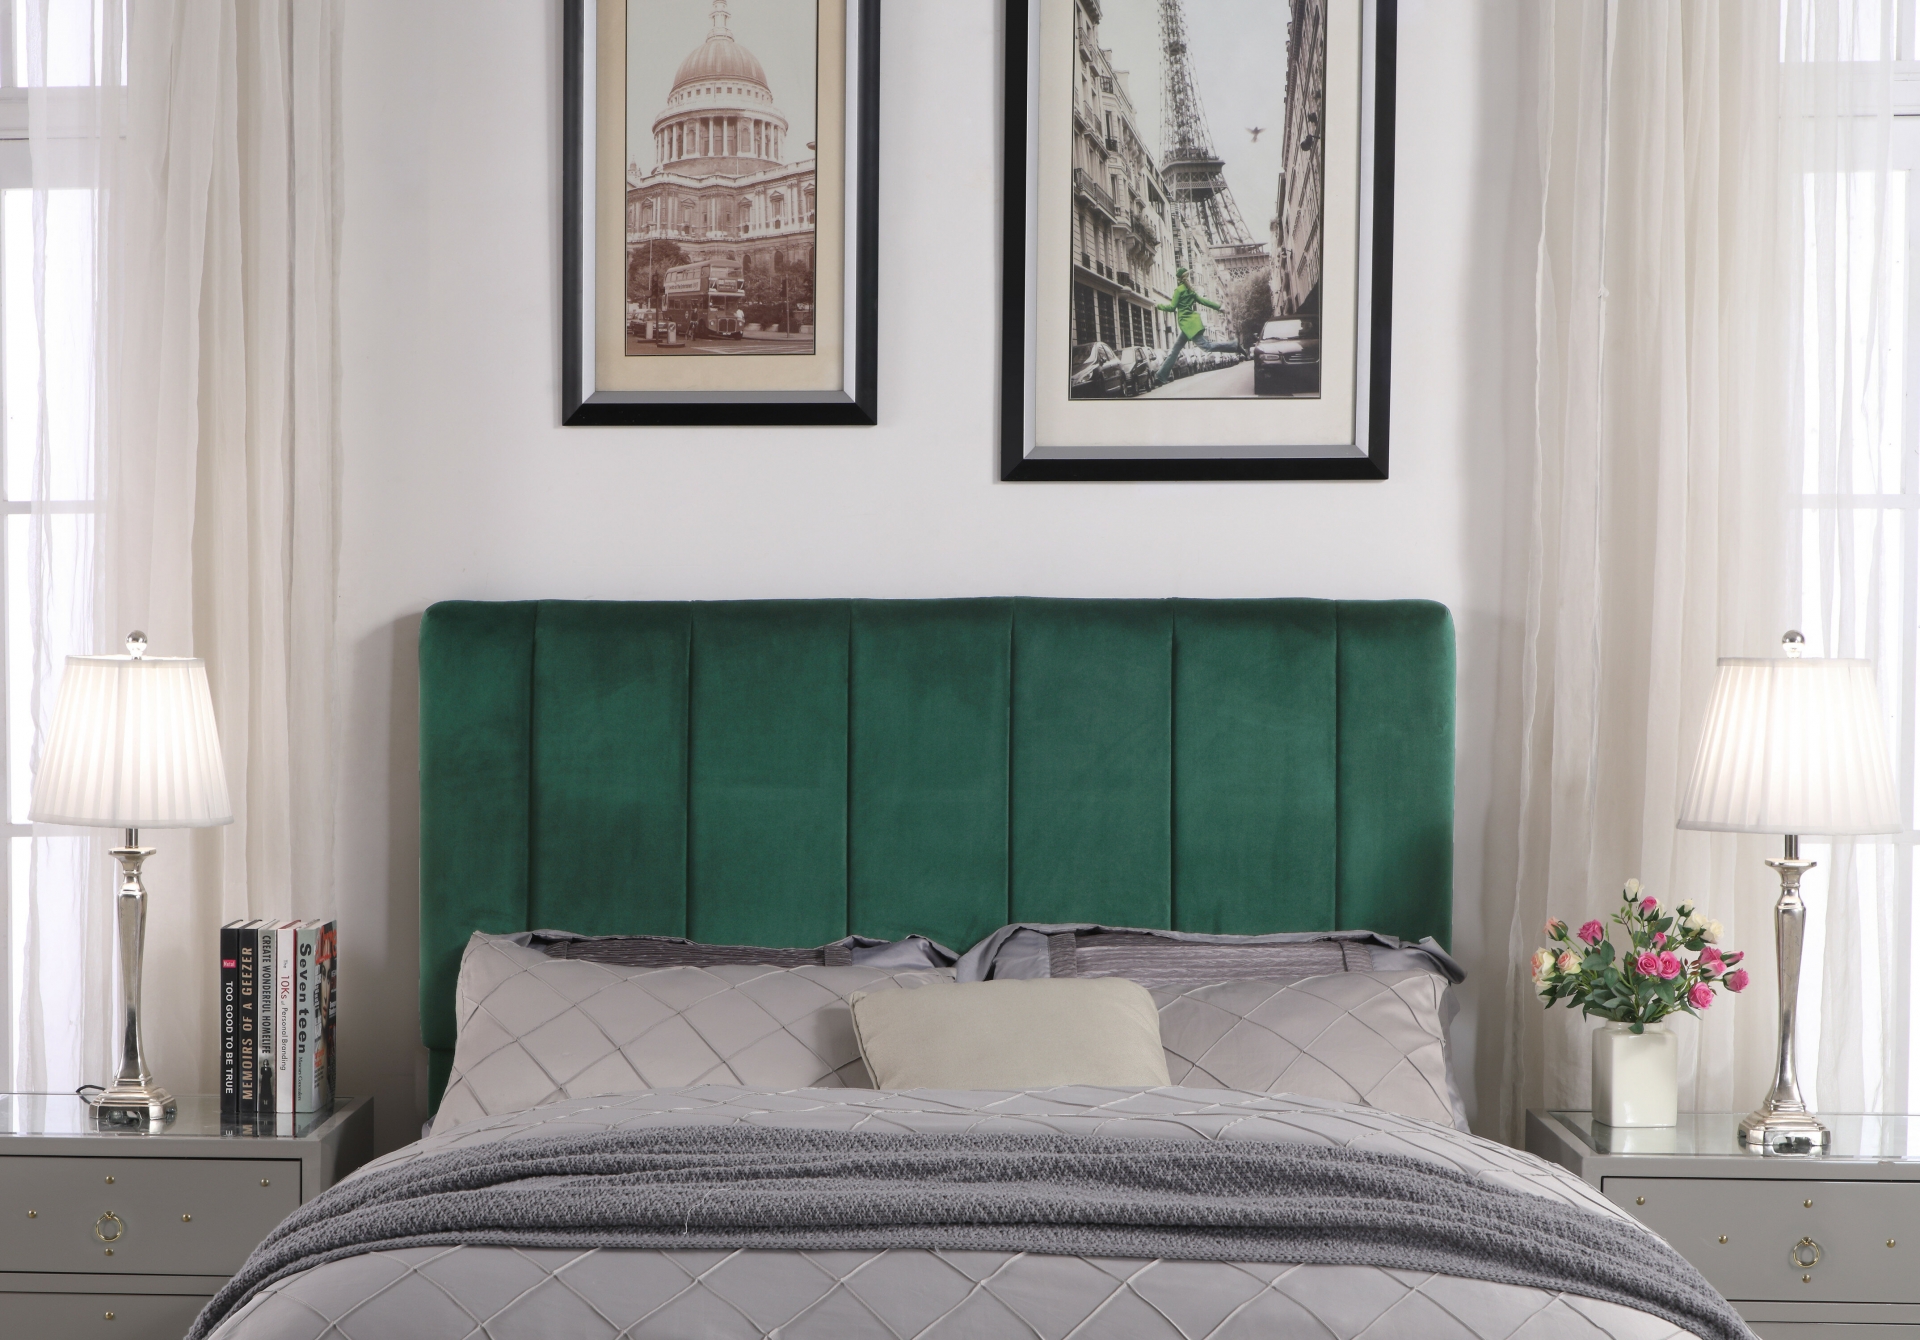 Đầu giường màu xanh lá cây đậm với những đường sọc làm điểm nhấn nổi bật giữa gam màu xám làm chủ đạo trong căn phòng.